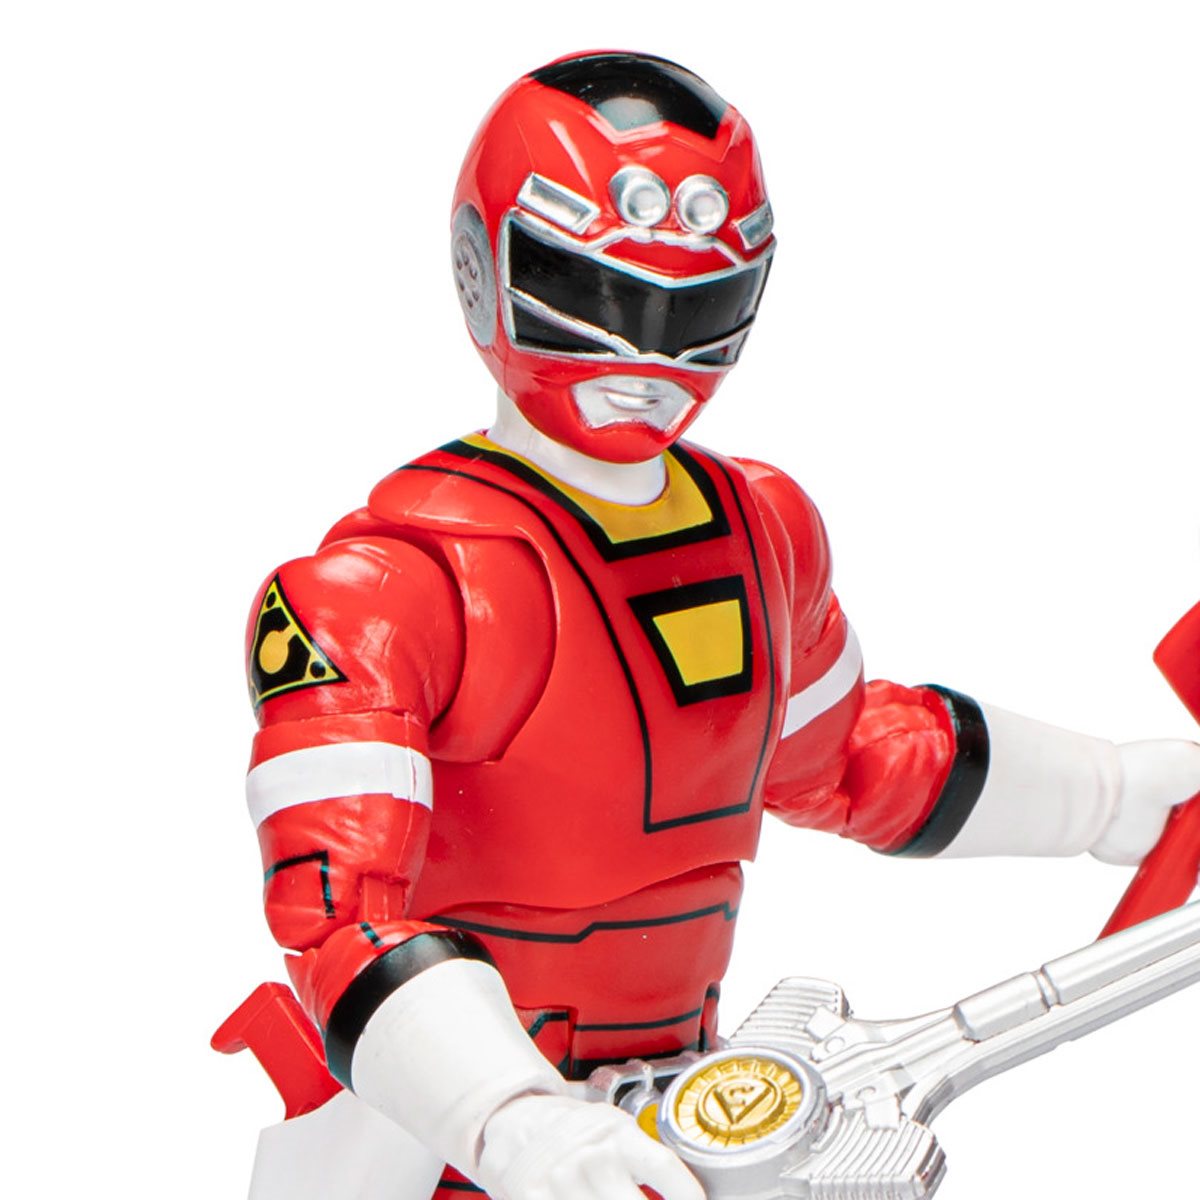 Kompleks Vædde beskæftigelse Power Rangers Lightning Collection Turbo Red Ranger 6-Inch Action Figure